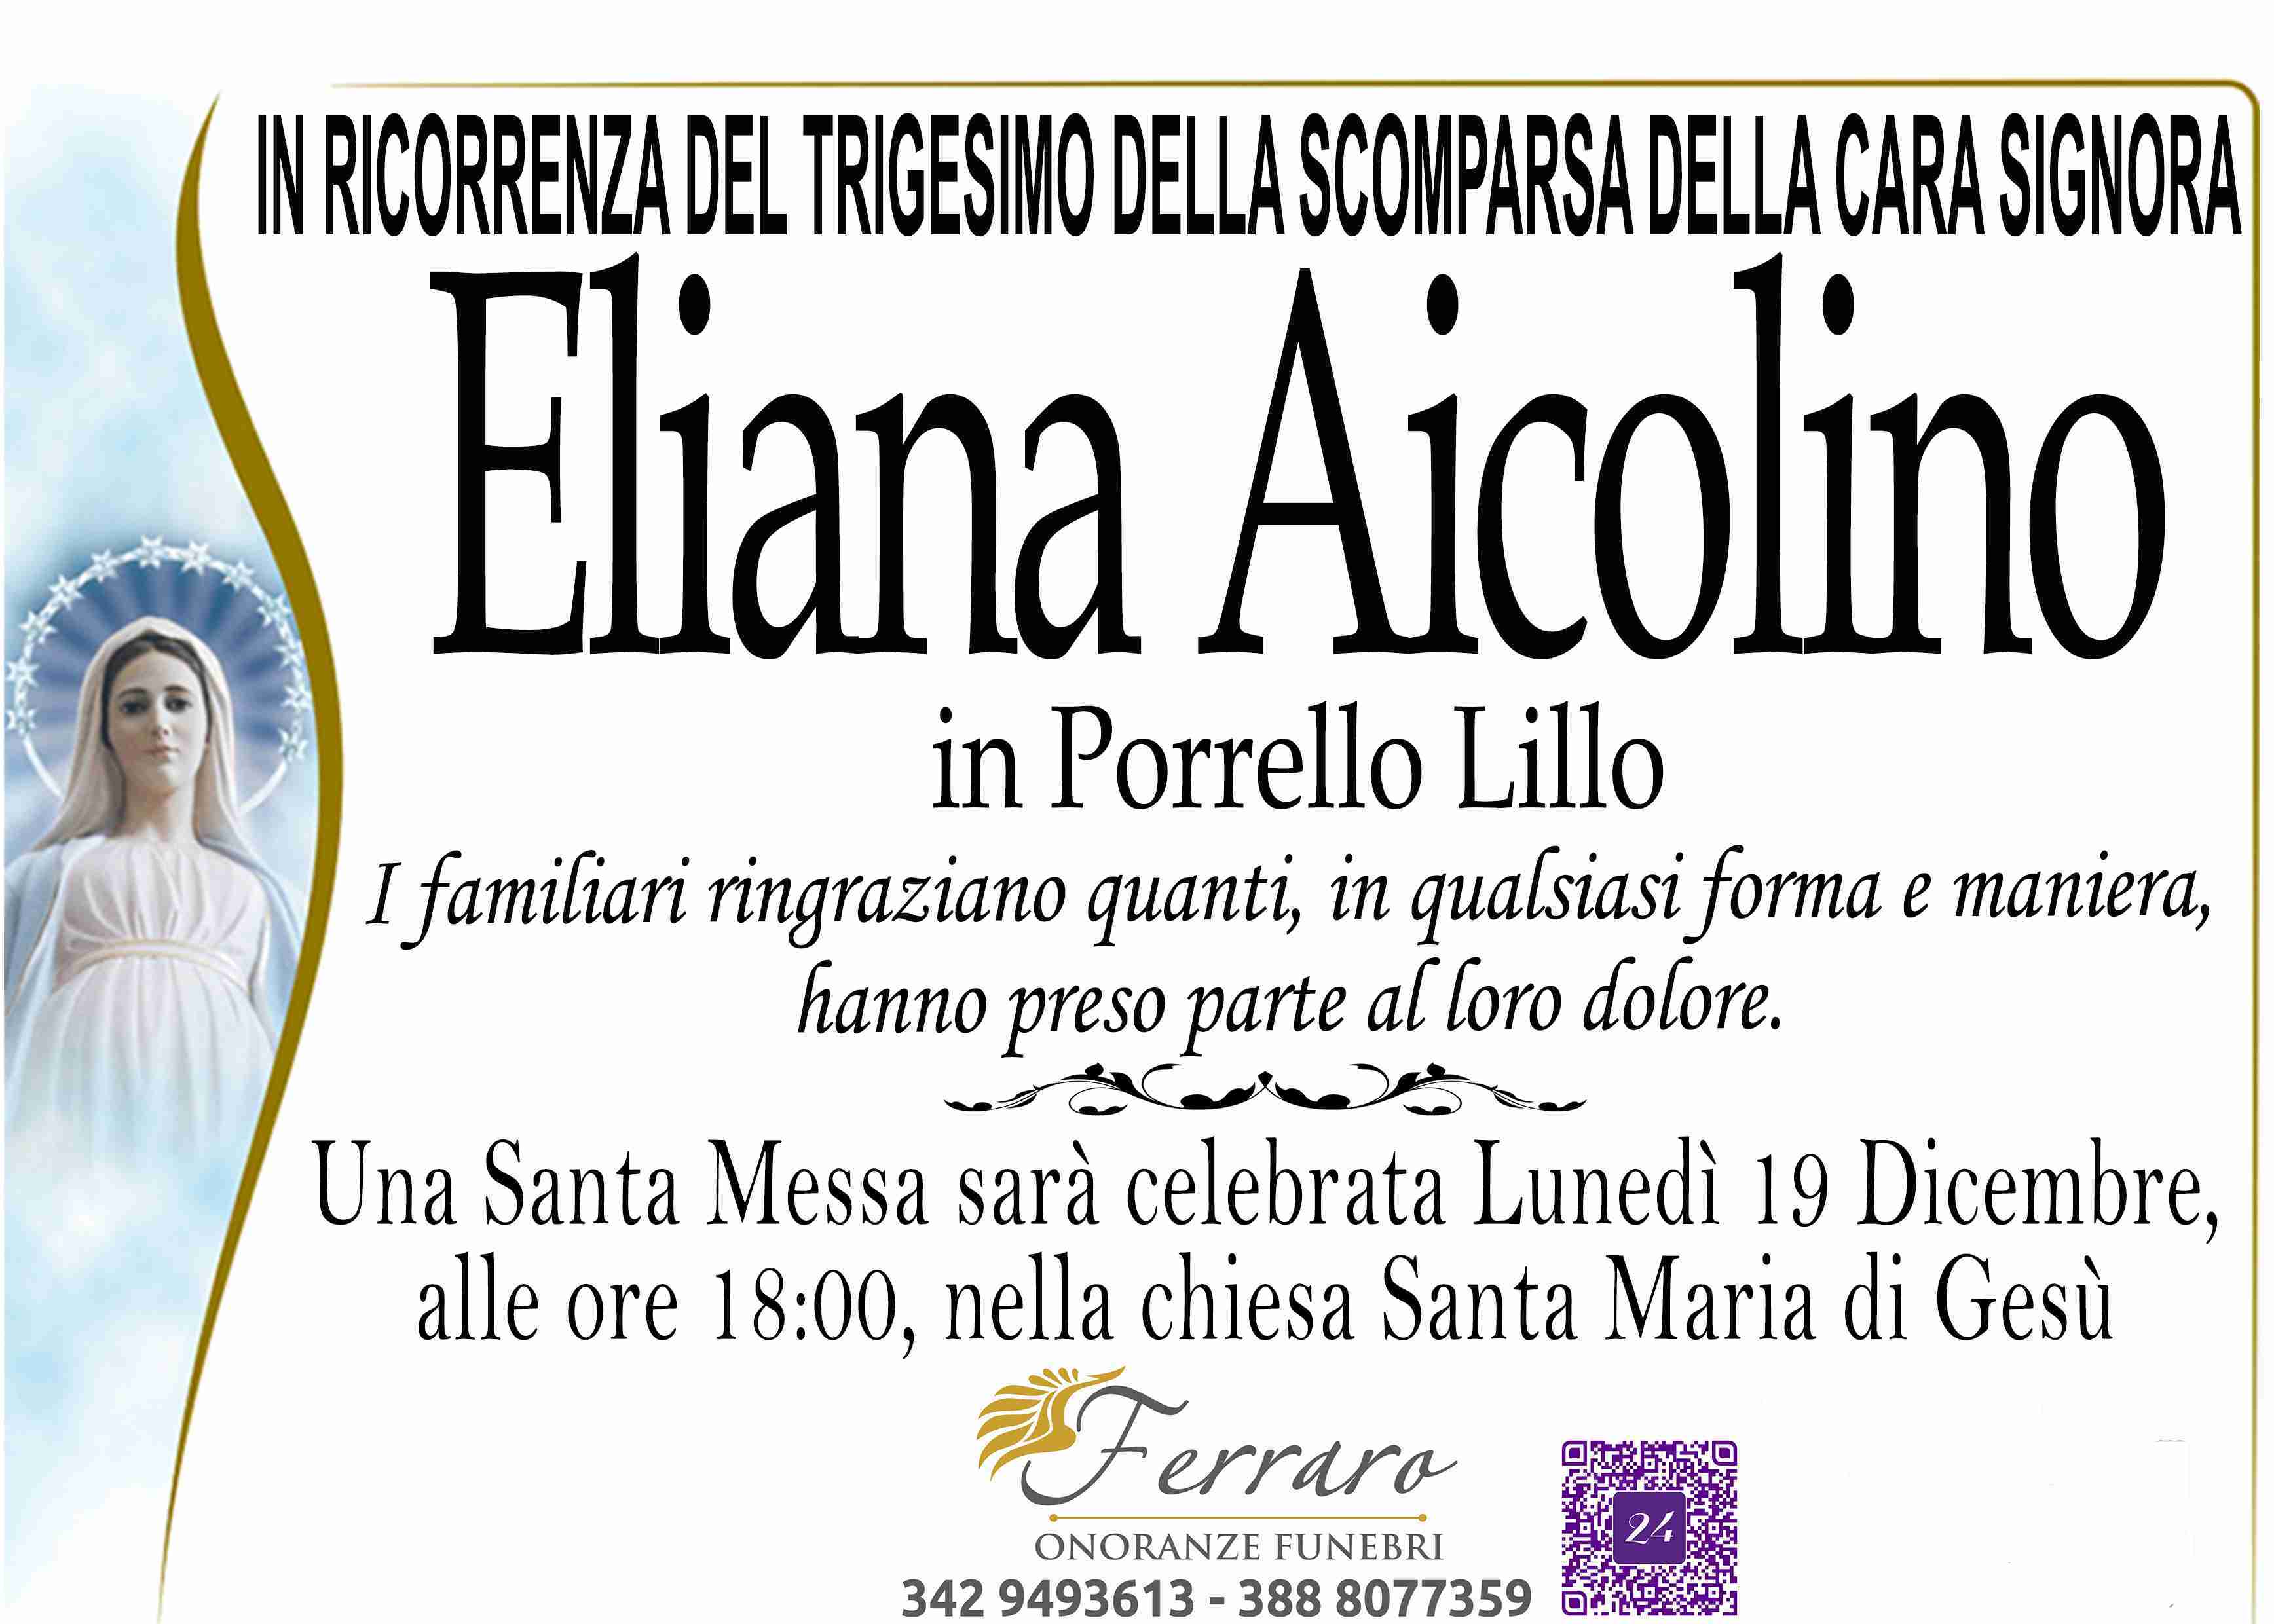 Eliana Aicolino